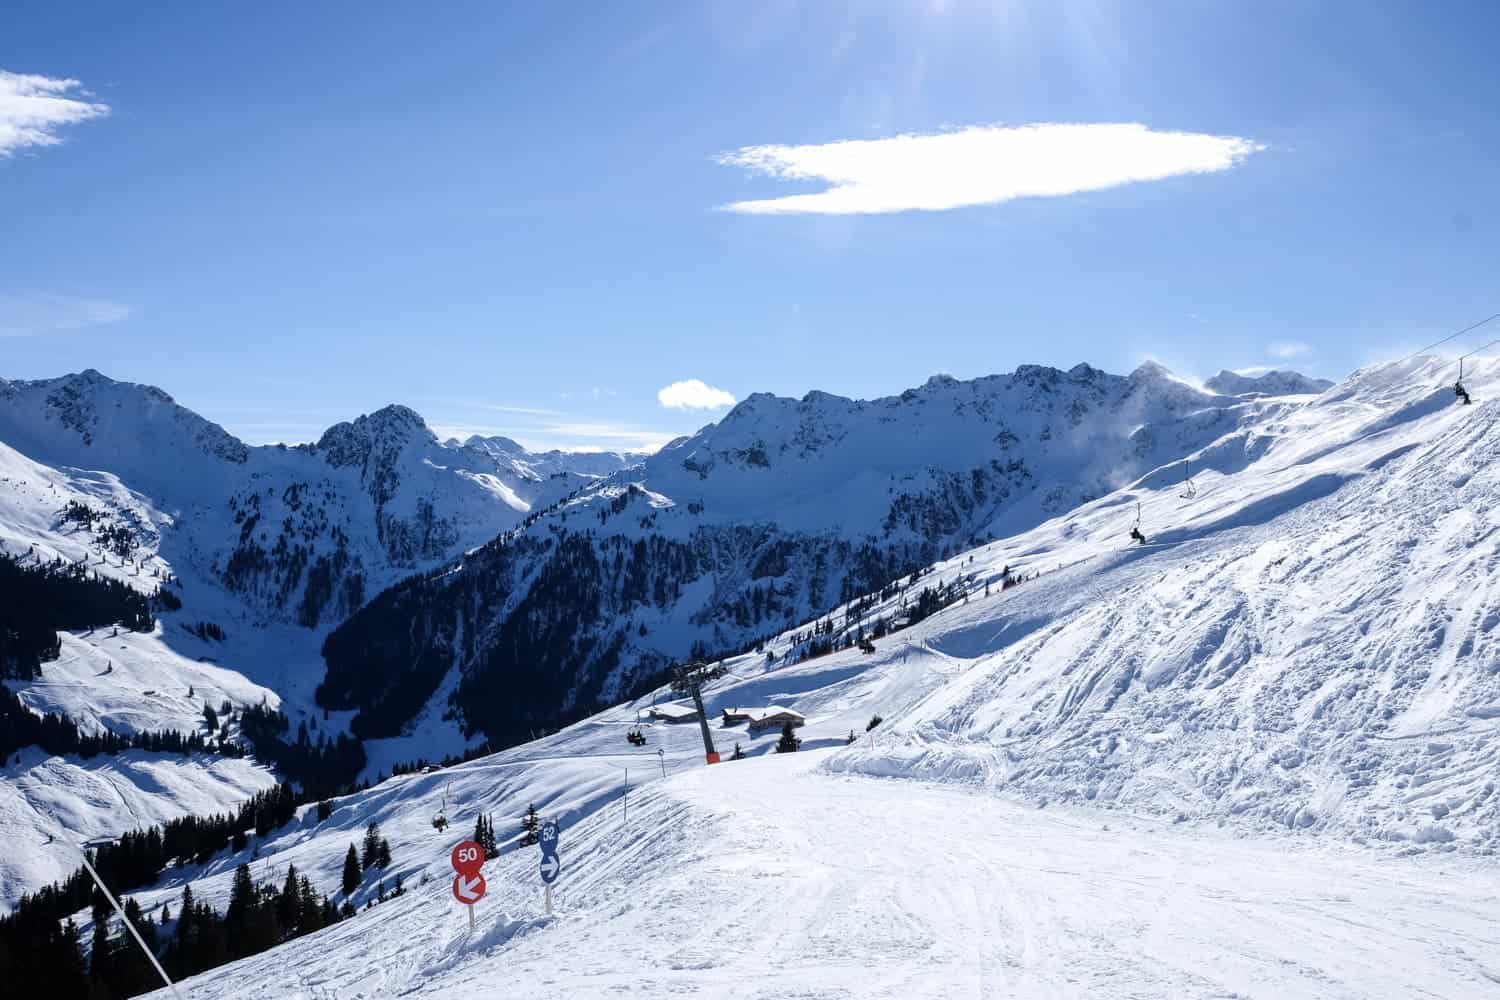 Skiing in Alpbachtal, Austria at Ski Jewel